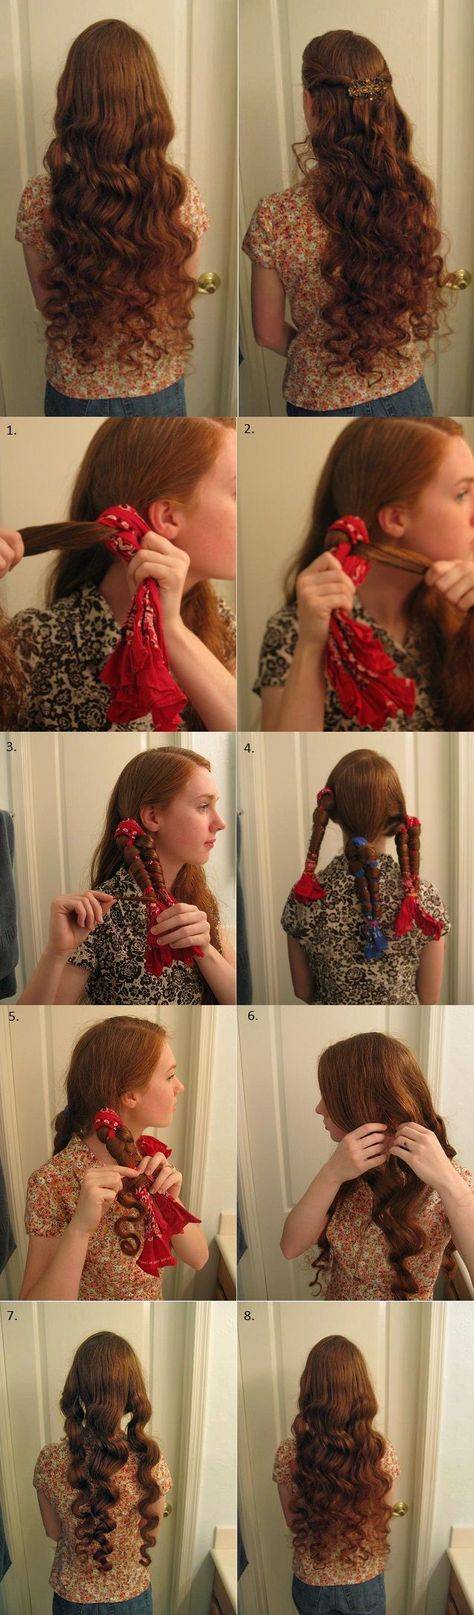 Локоны на средние волосы в домашних условиях, как делать кудри на средние волосы: фото, инструкция, советы